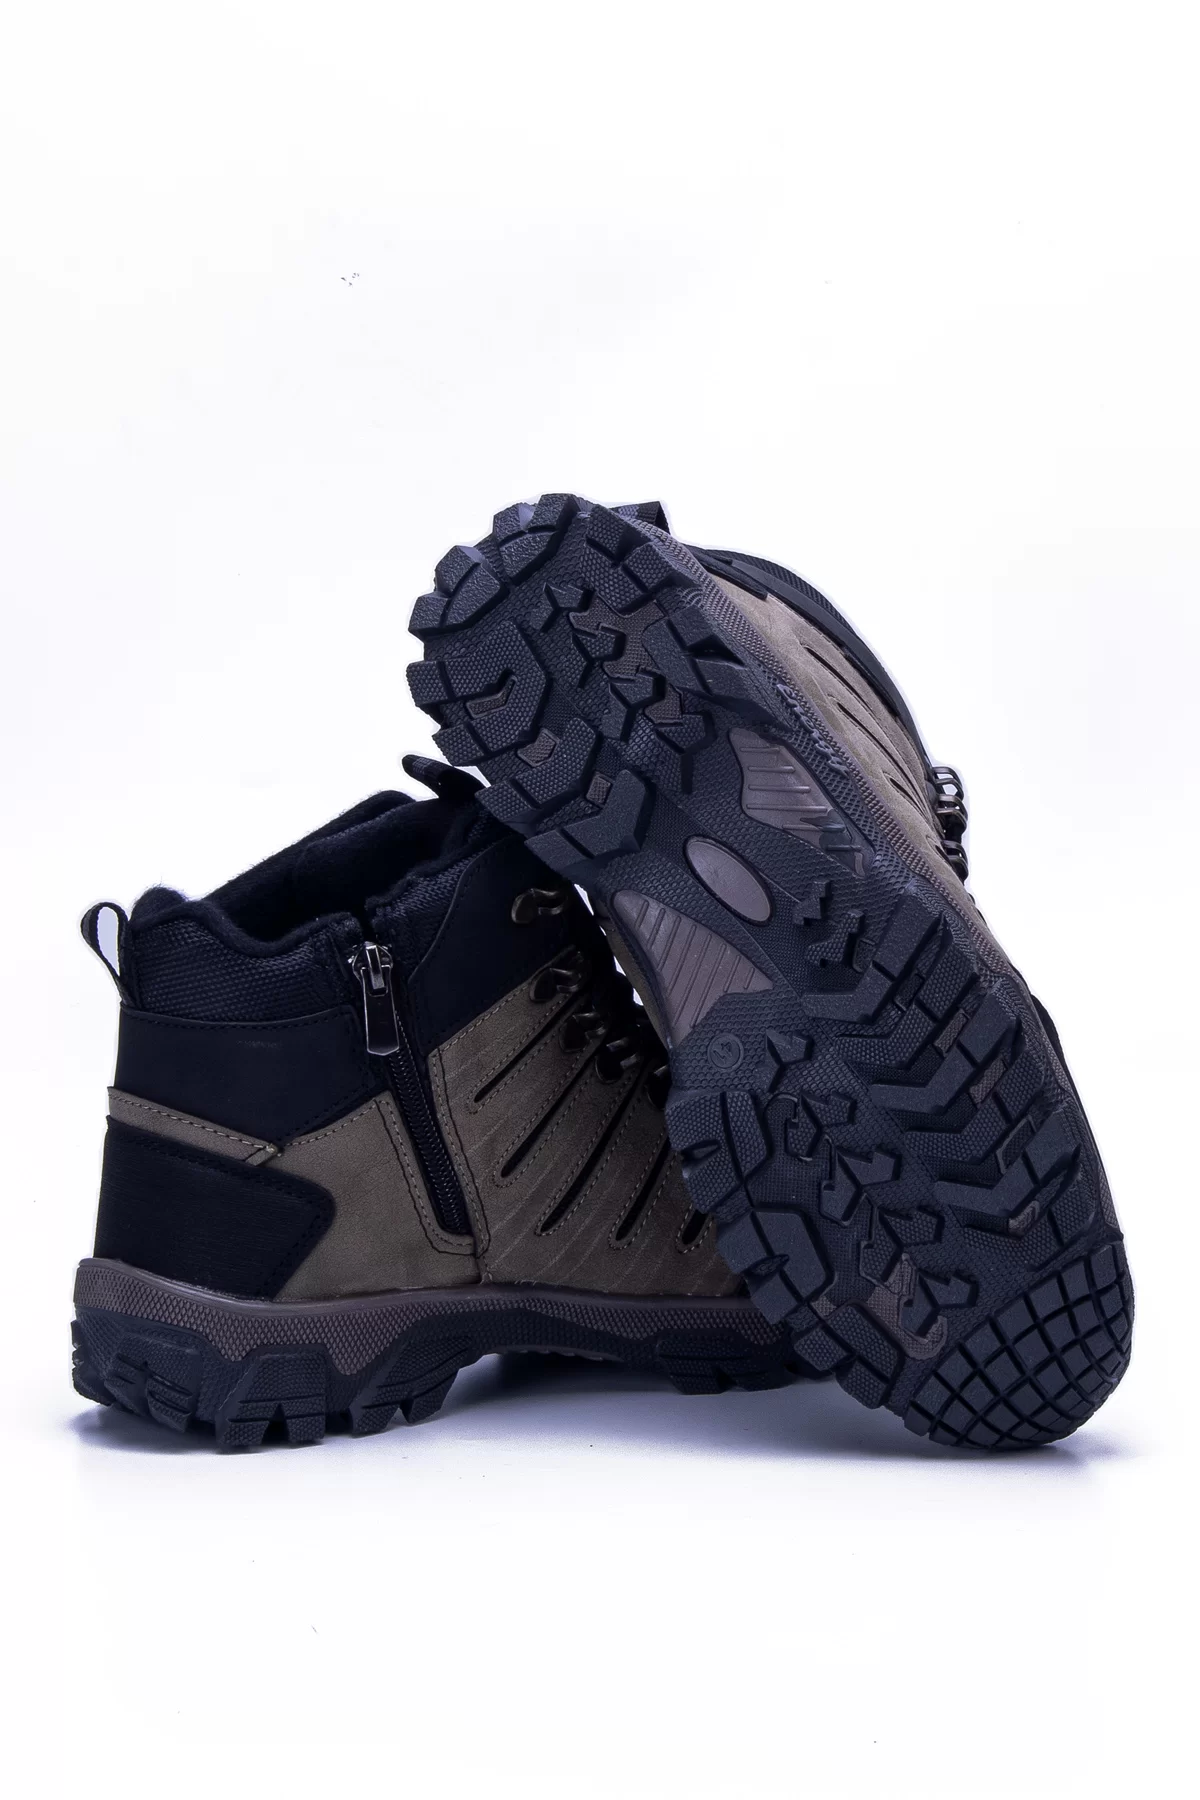 Unisex Outdoor Ayakkabı DSM2 - Vizon